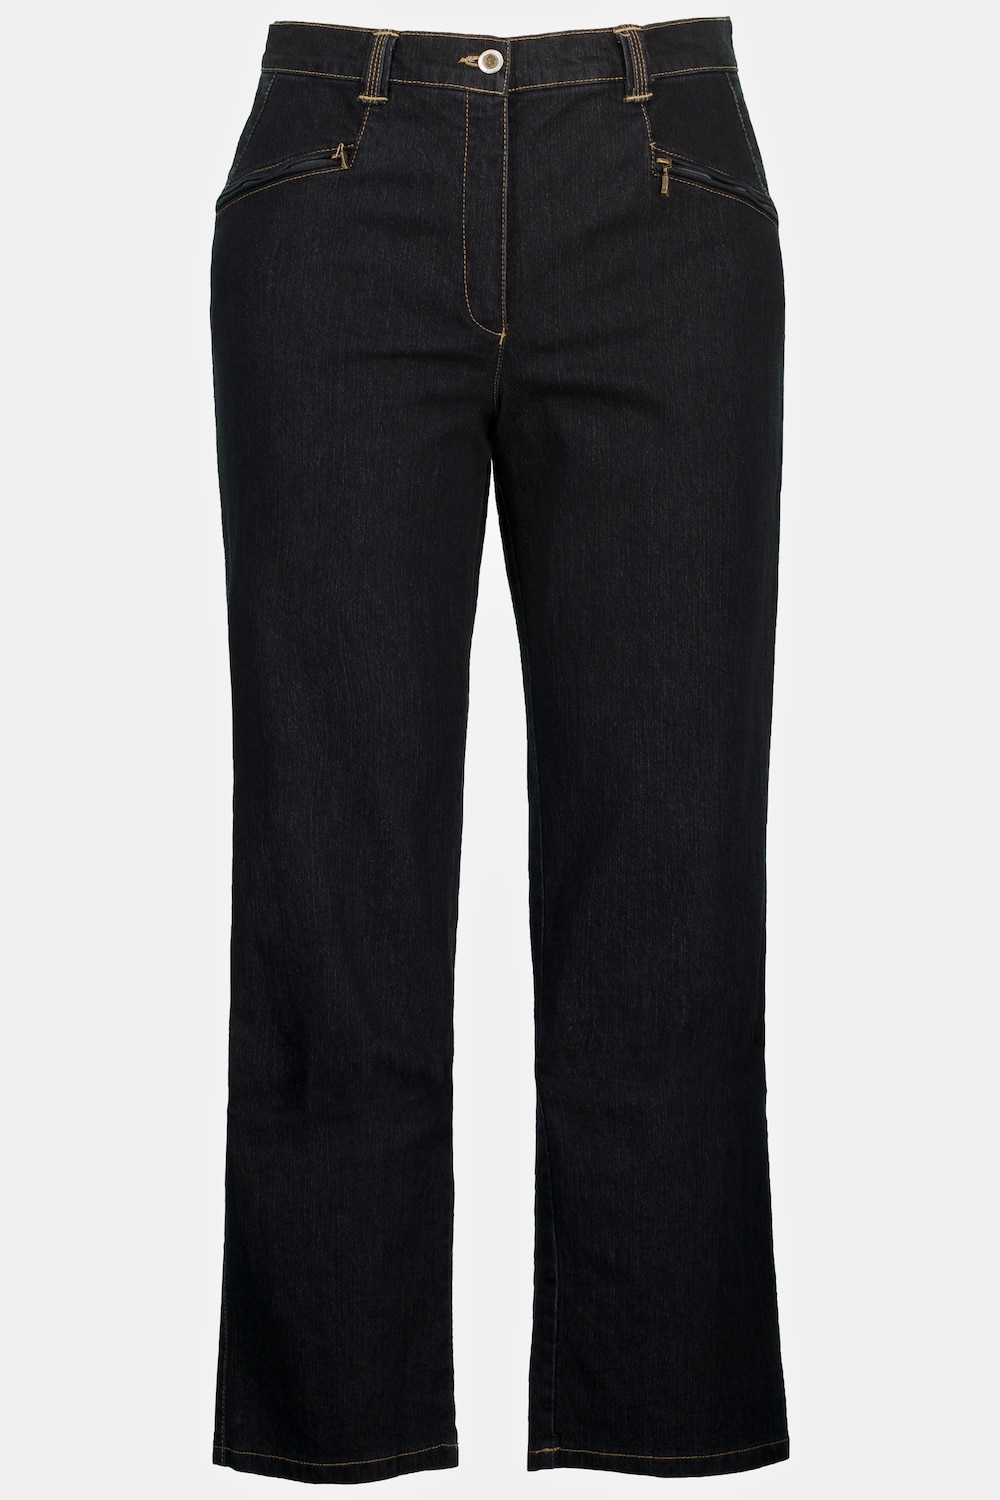 Grote Maten jeans Mony, Dames, zwart, Maat: 48, Katoen/Polyester, Ulla Popken